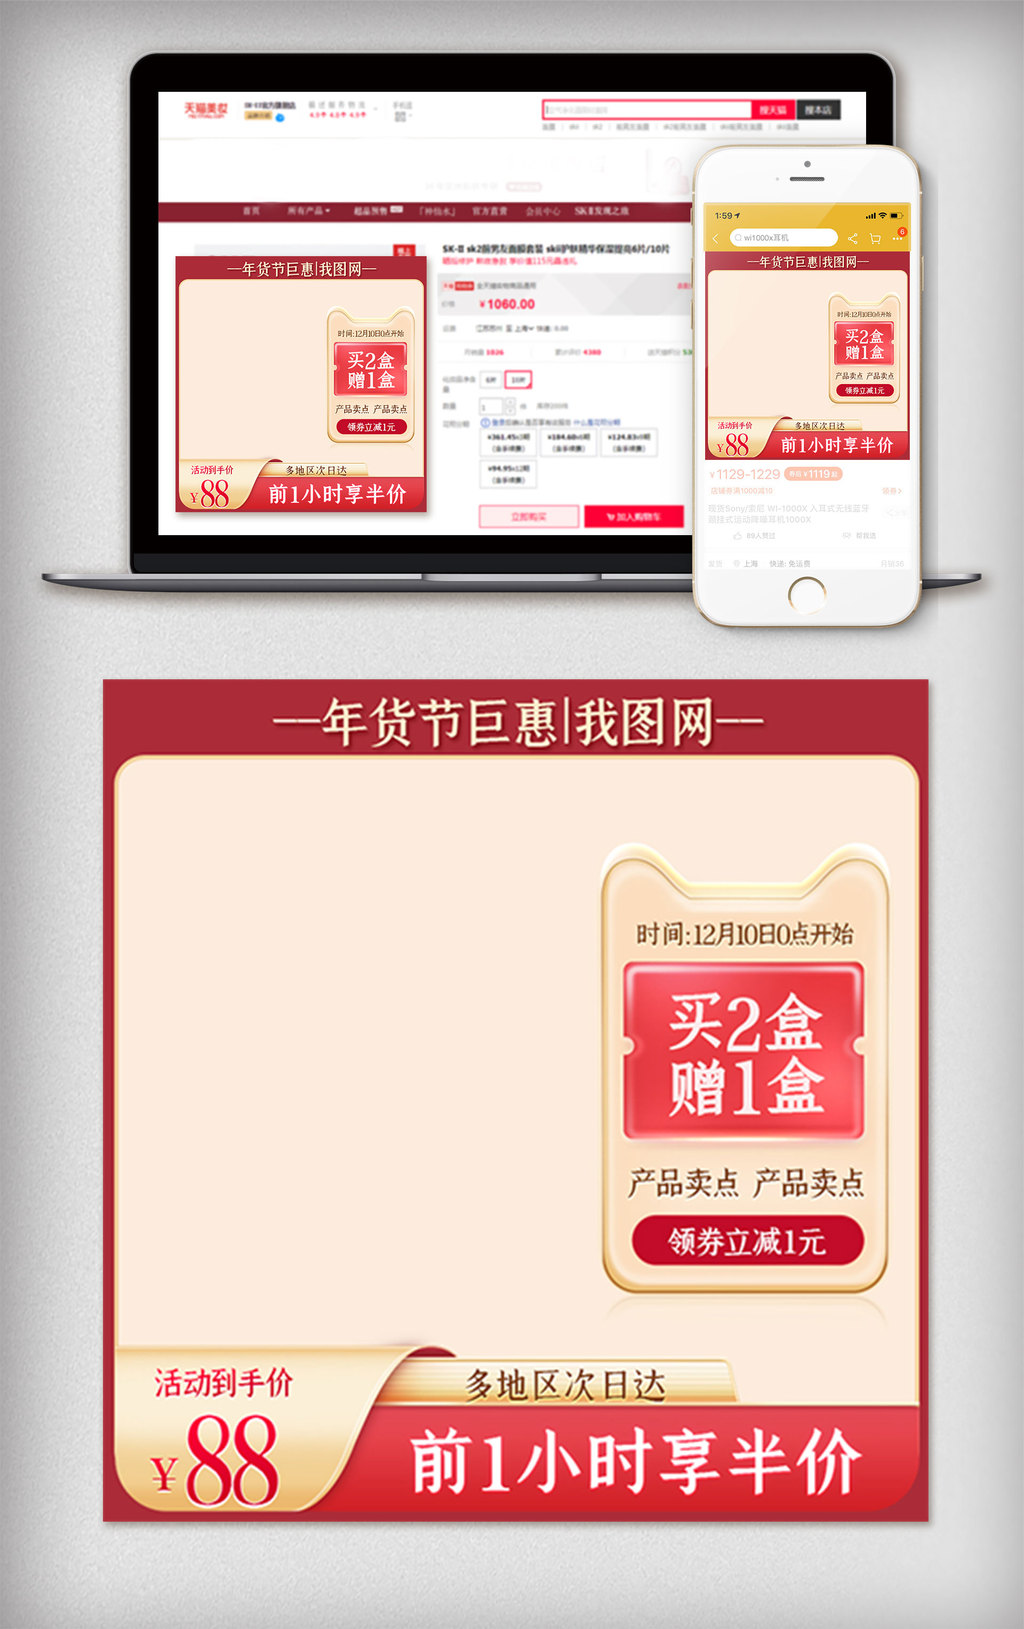 红色喜庆年货节主图电商活动促销优惠券模版图片